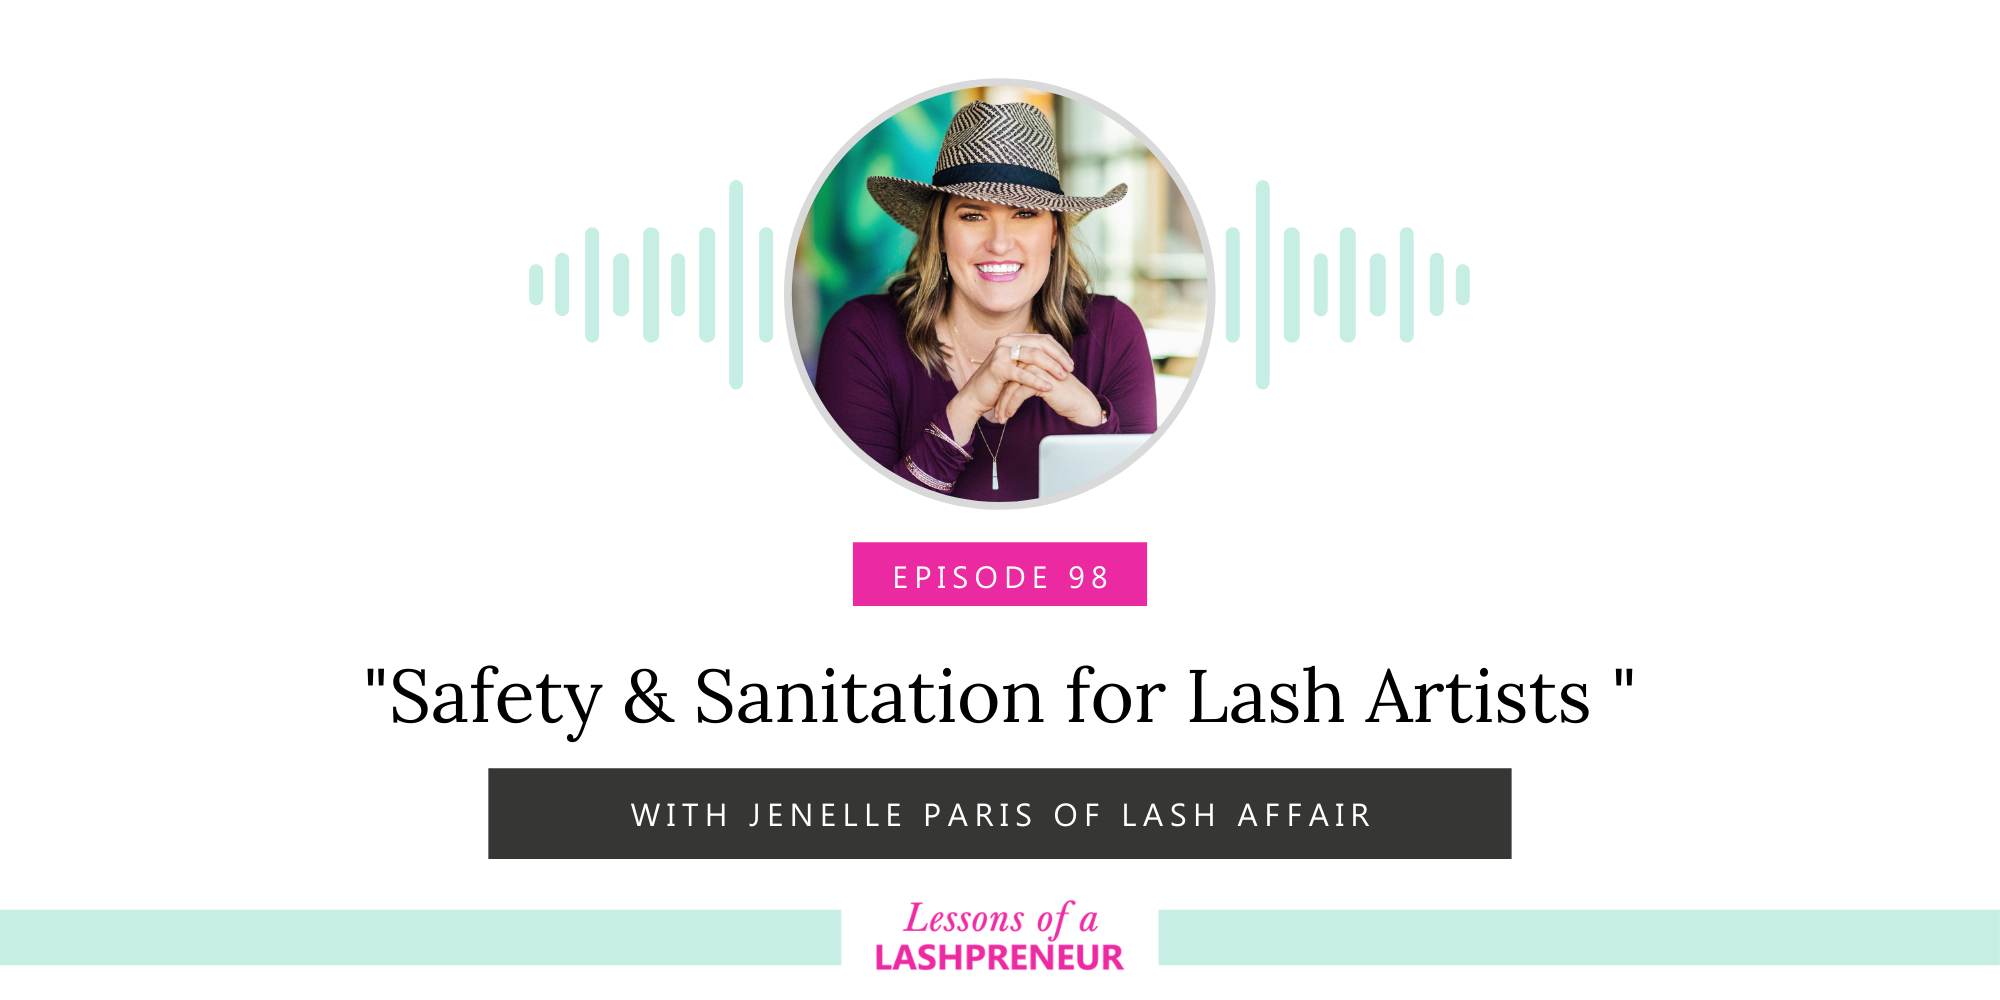 Safety & Sanitation for Lash Artists with Jenelle Paris of Lash Affair